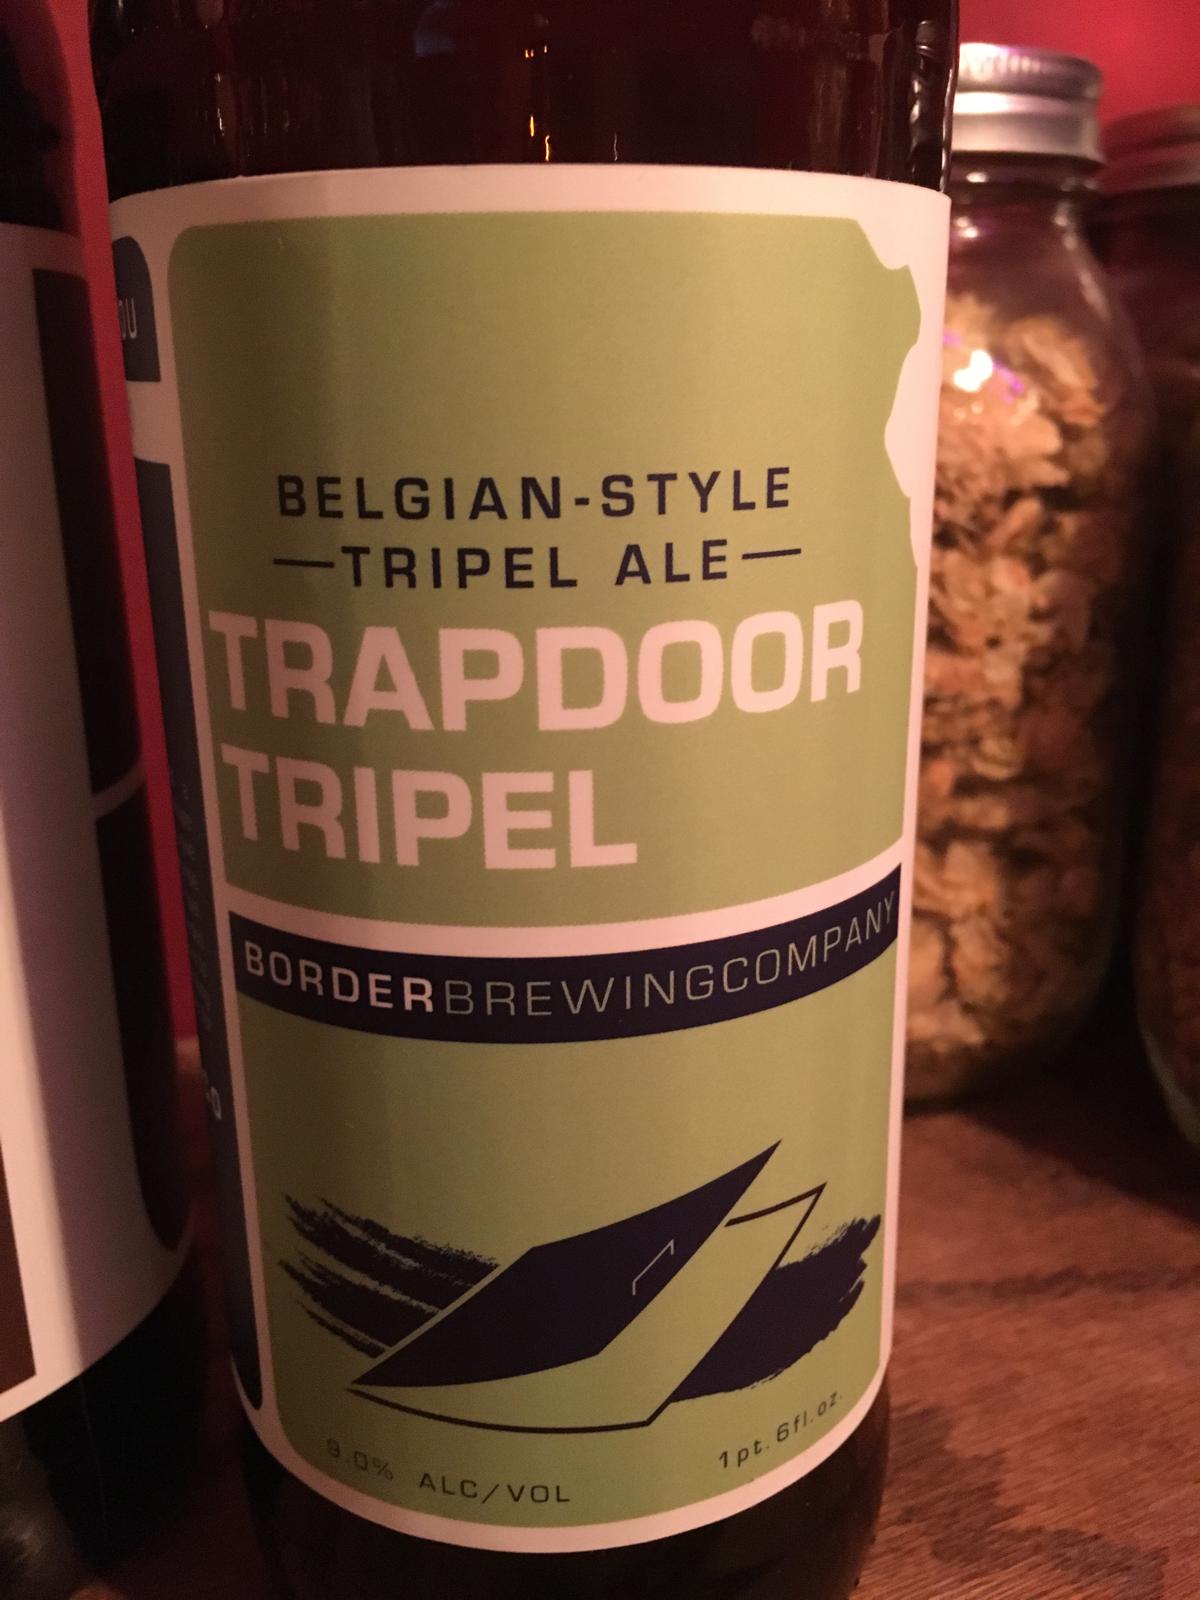 Trapdoor Tripel